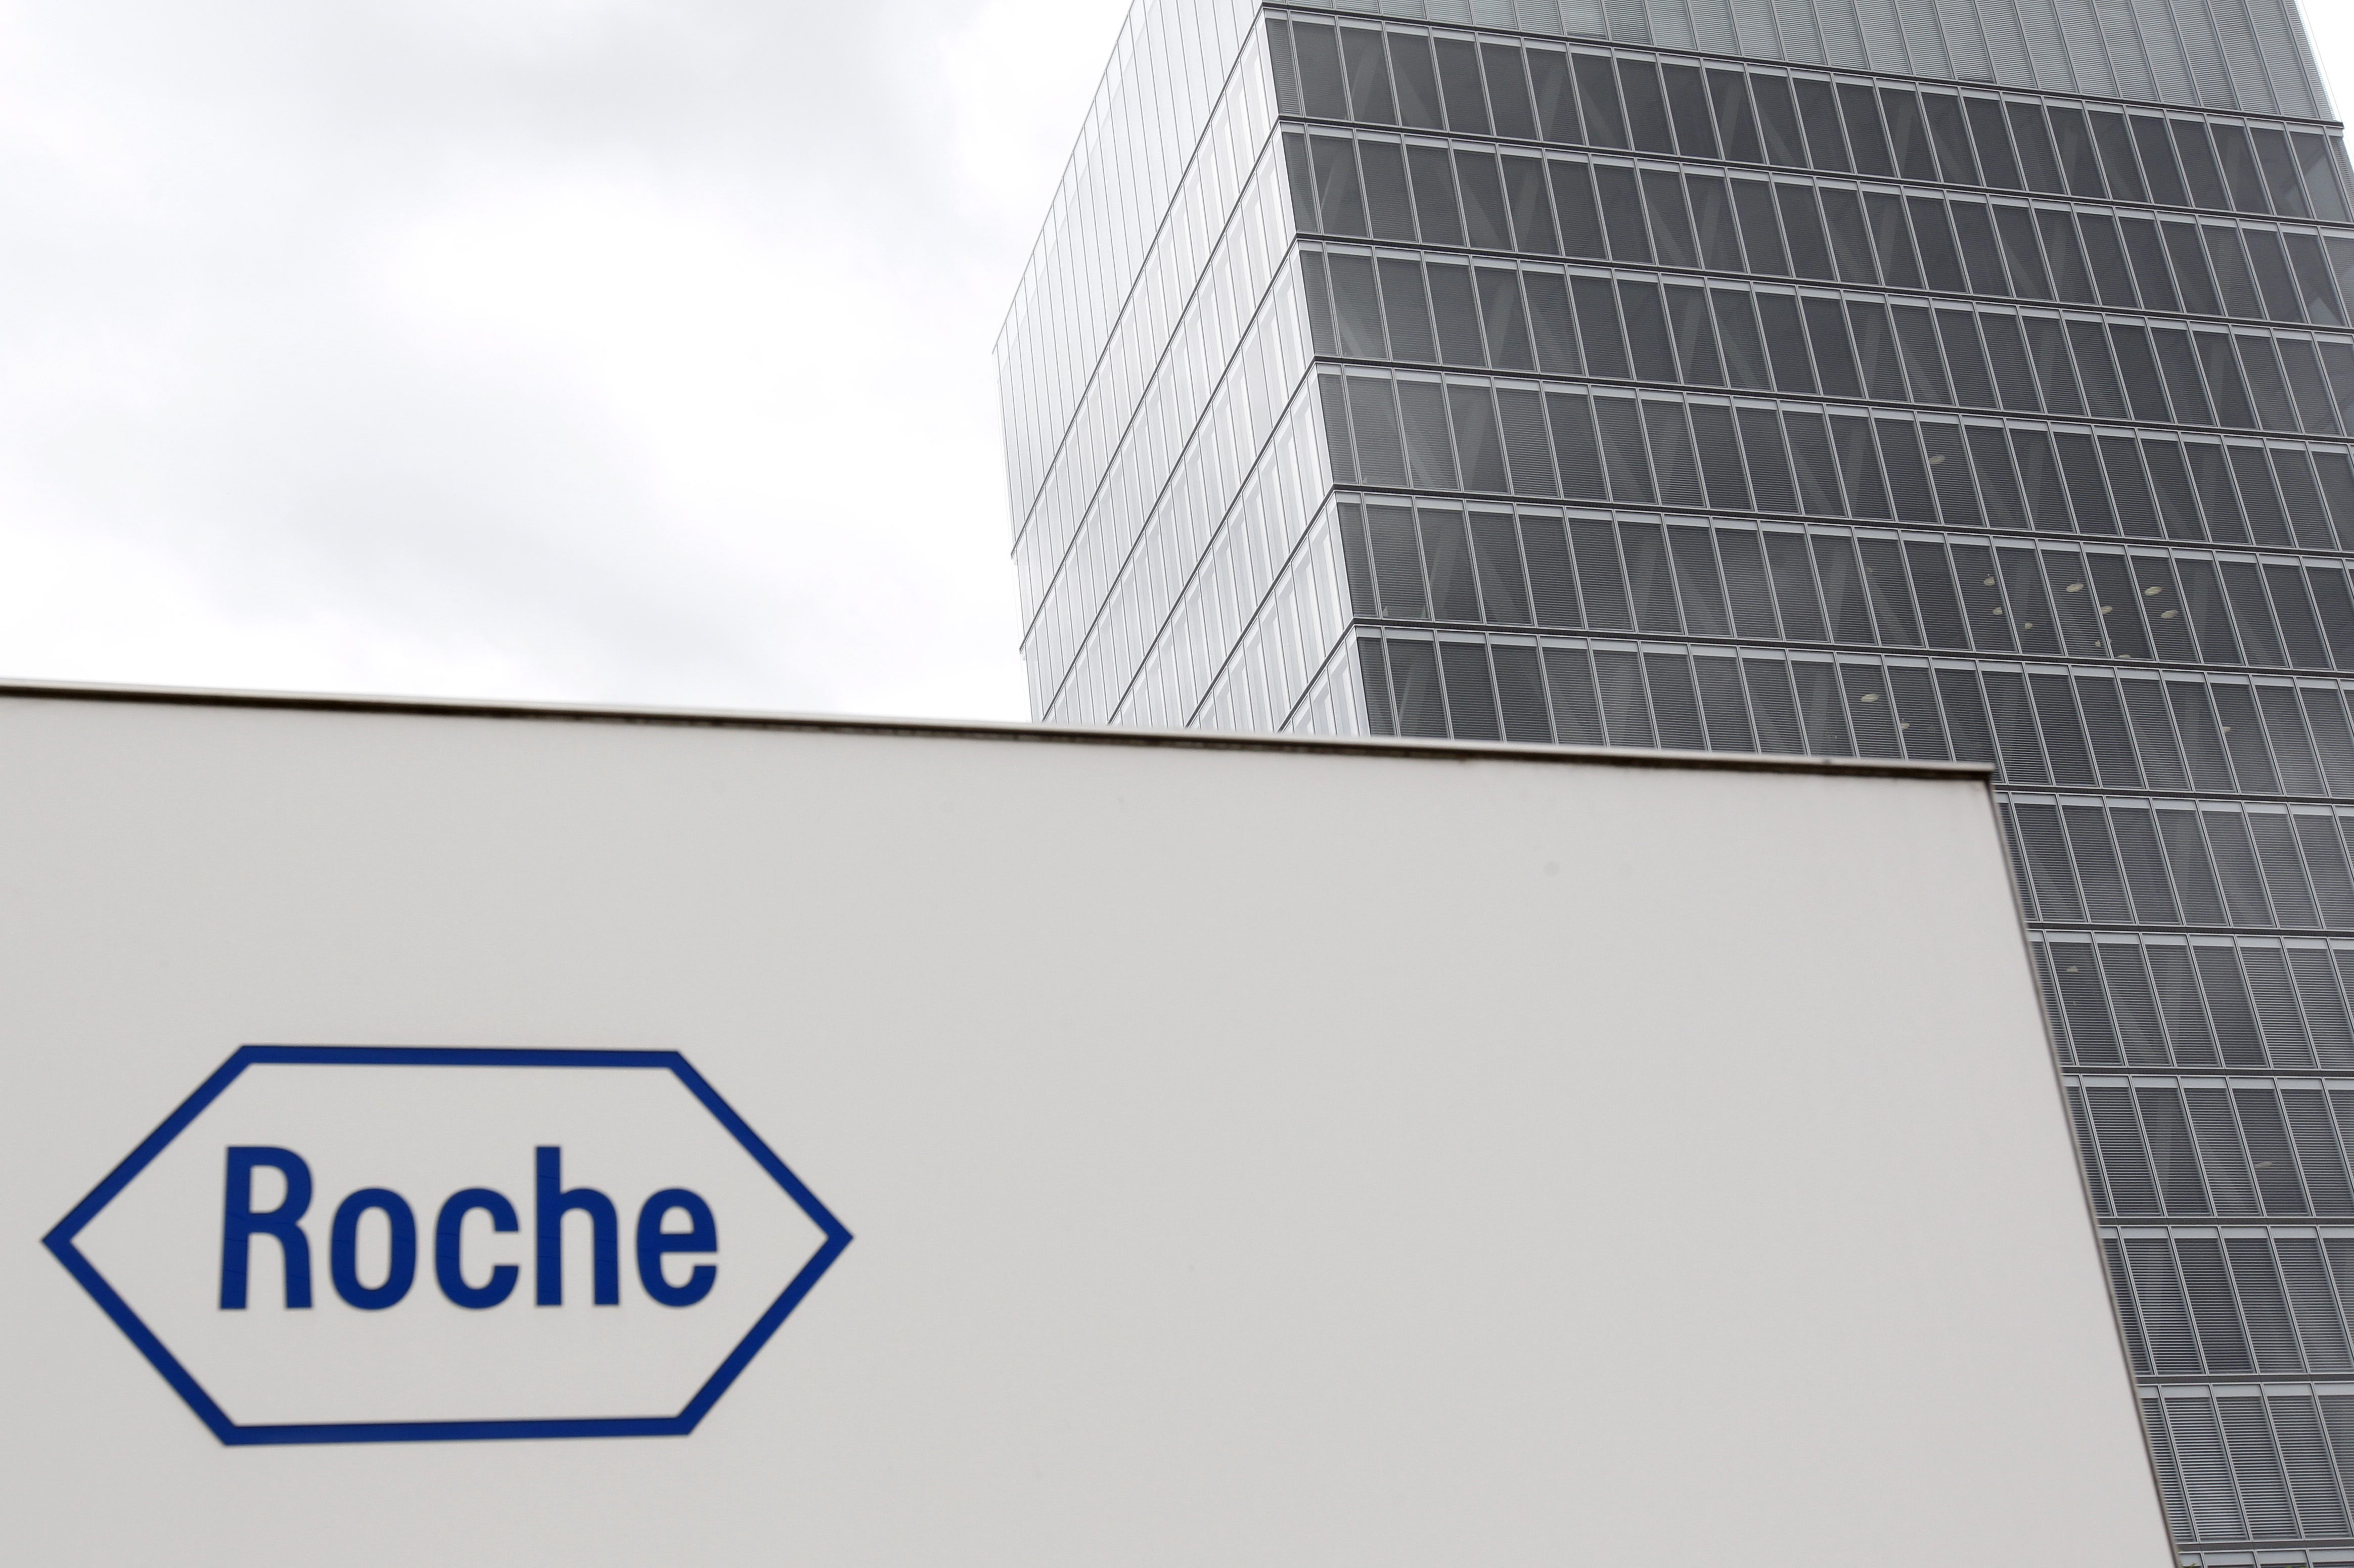 Με τις ευρωπαϊκές αρχές συνεργάζεται η Roche σε νομική διαδικασία εις βάρος της